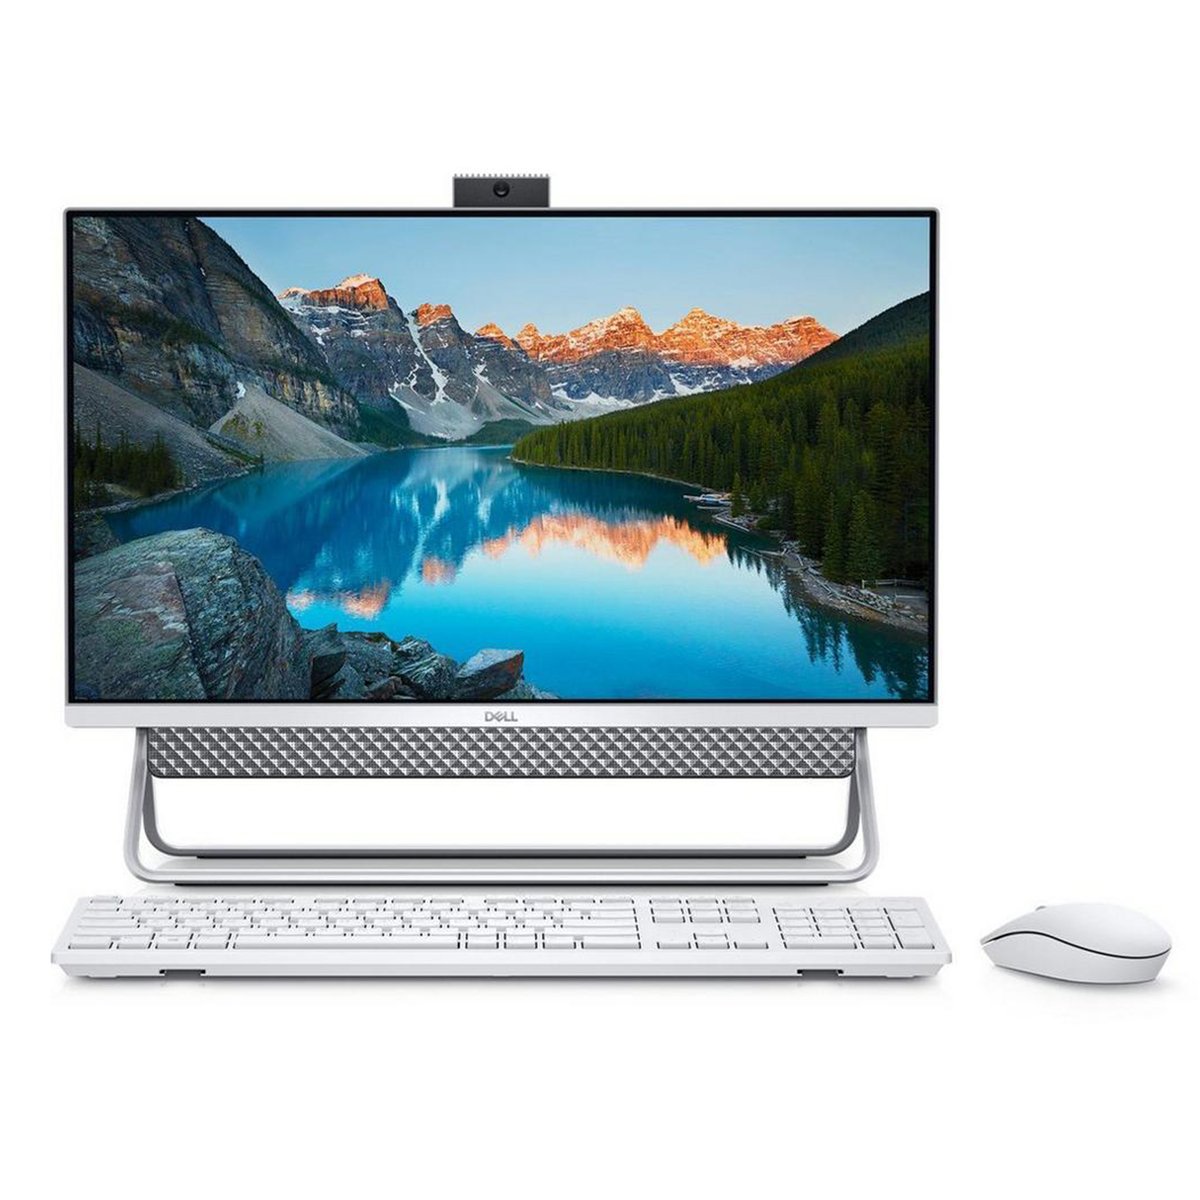 Dell 5400-AIO-K0343 All in One Desktop, 11th Gen Intel Core i3-1115G4, 23.8 inches, 8 GB RAM, 1 TB SSD, Intel Graphics, Silver